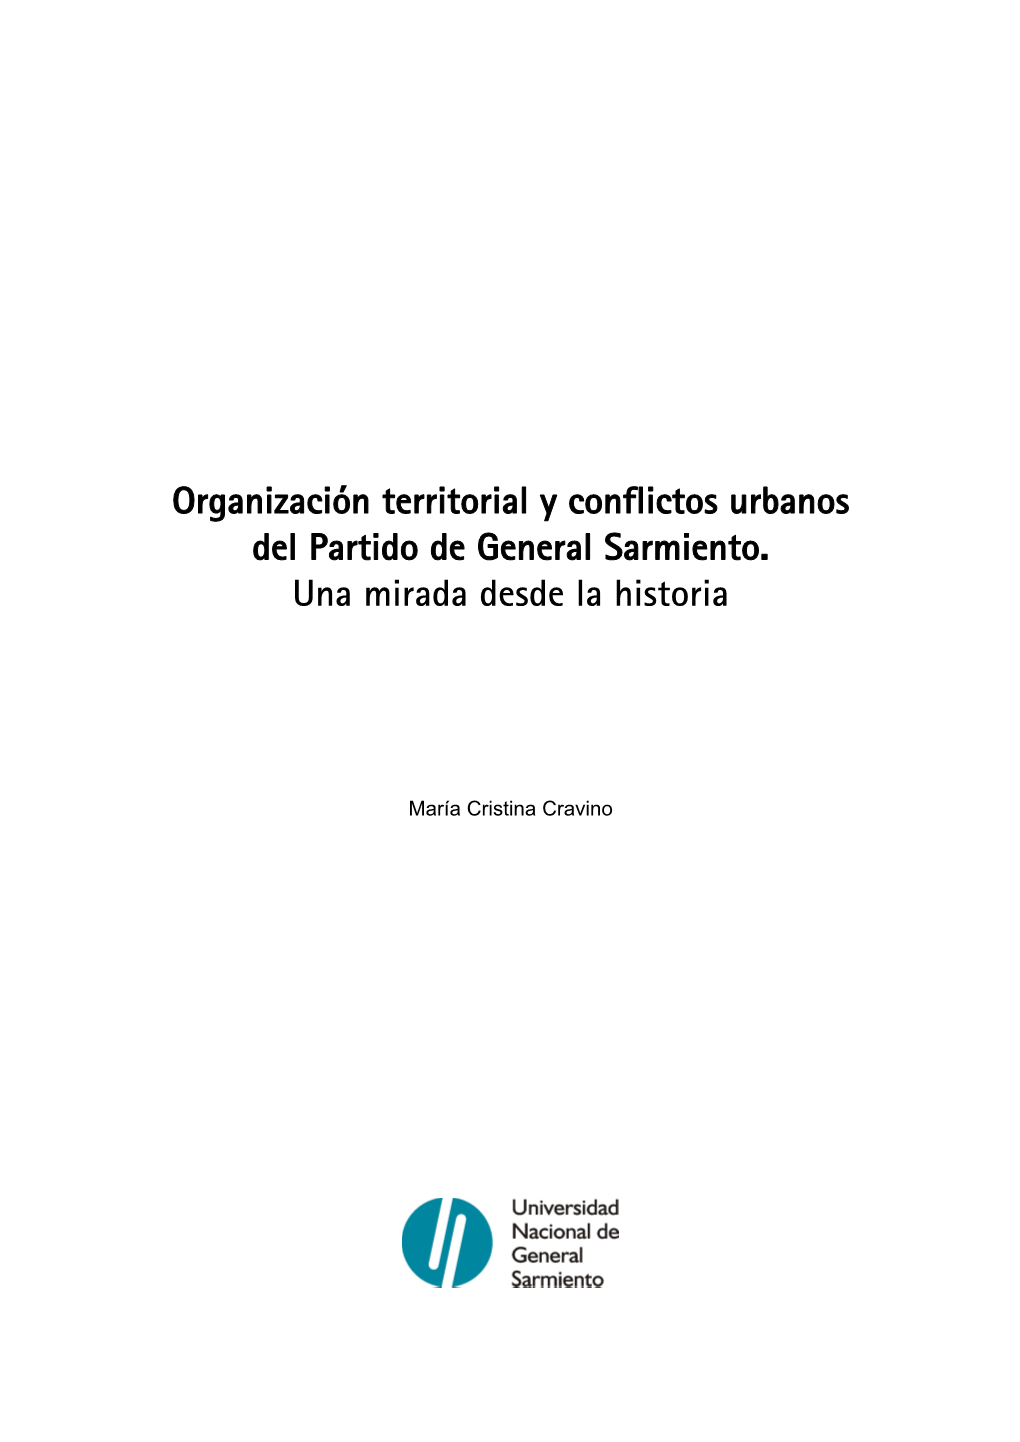 Organización Territorial Y Conflictos Urbanos Del Partido De General Sarmiento. Una Mirada Desde La Historia